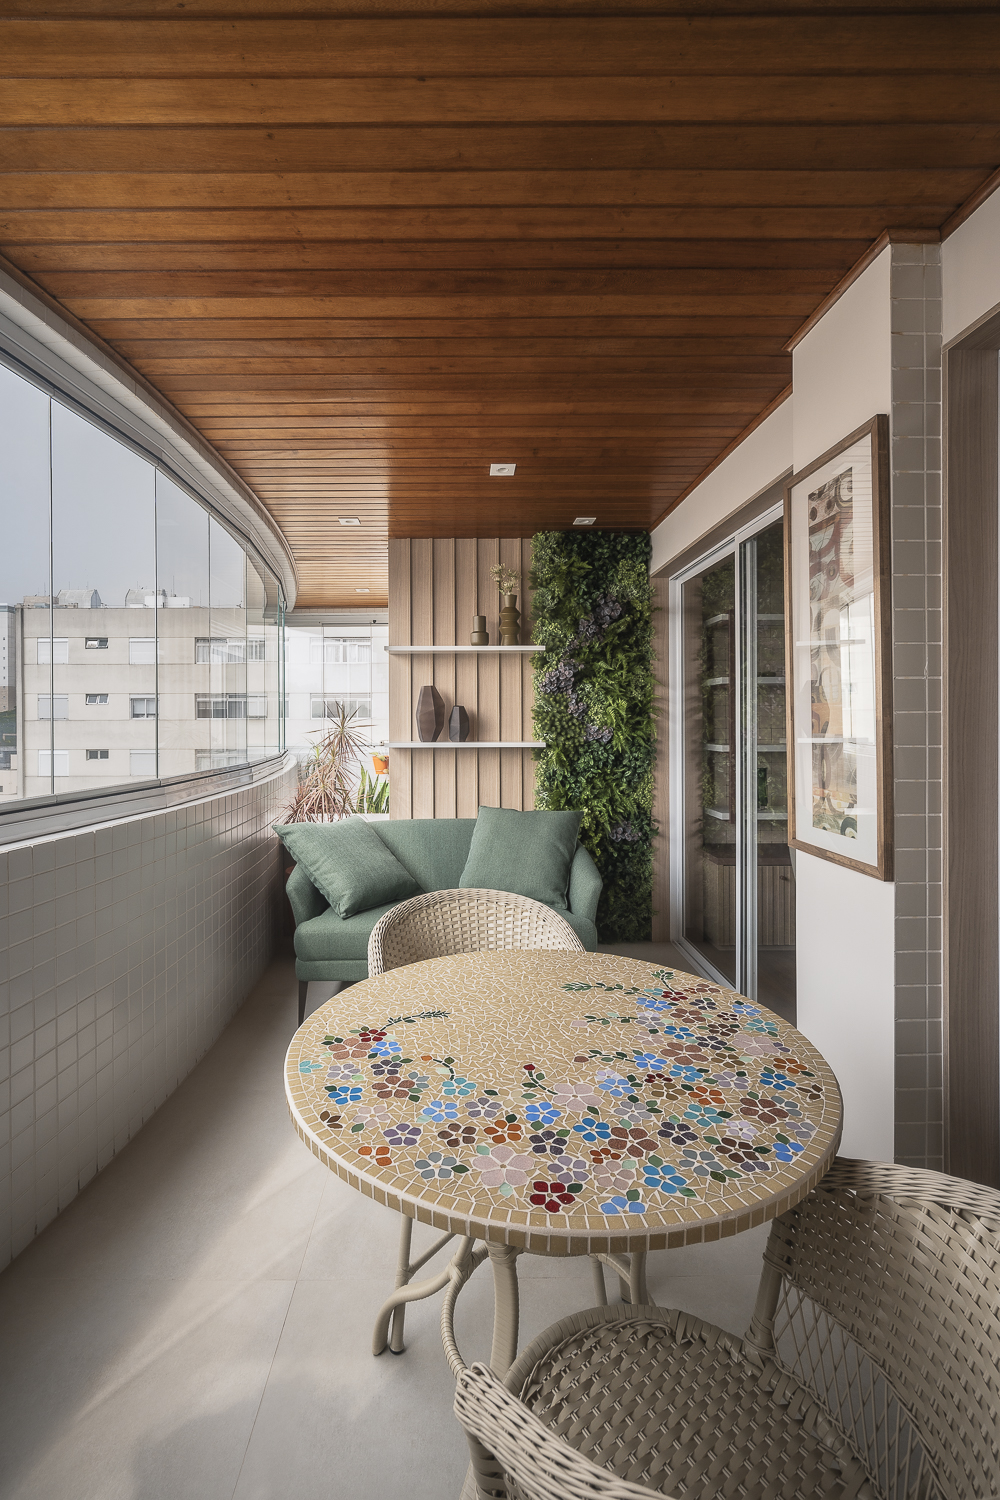 Projeto de Studio Ricciardi. Na foto, varanda com teto de madeira, sofá verde, mesa redonda pequena e marcenaria para plantas.